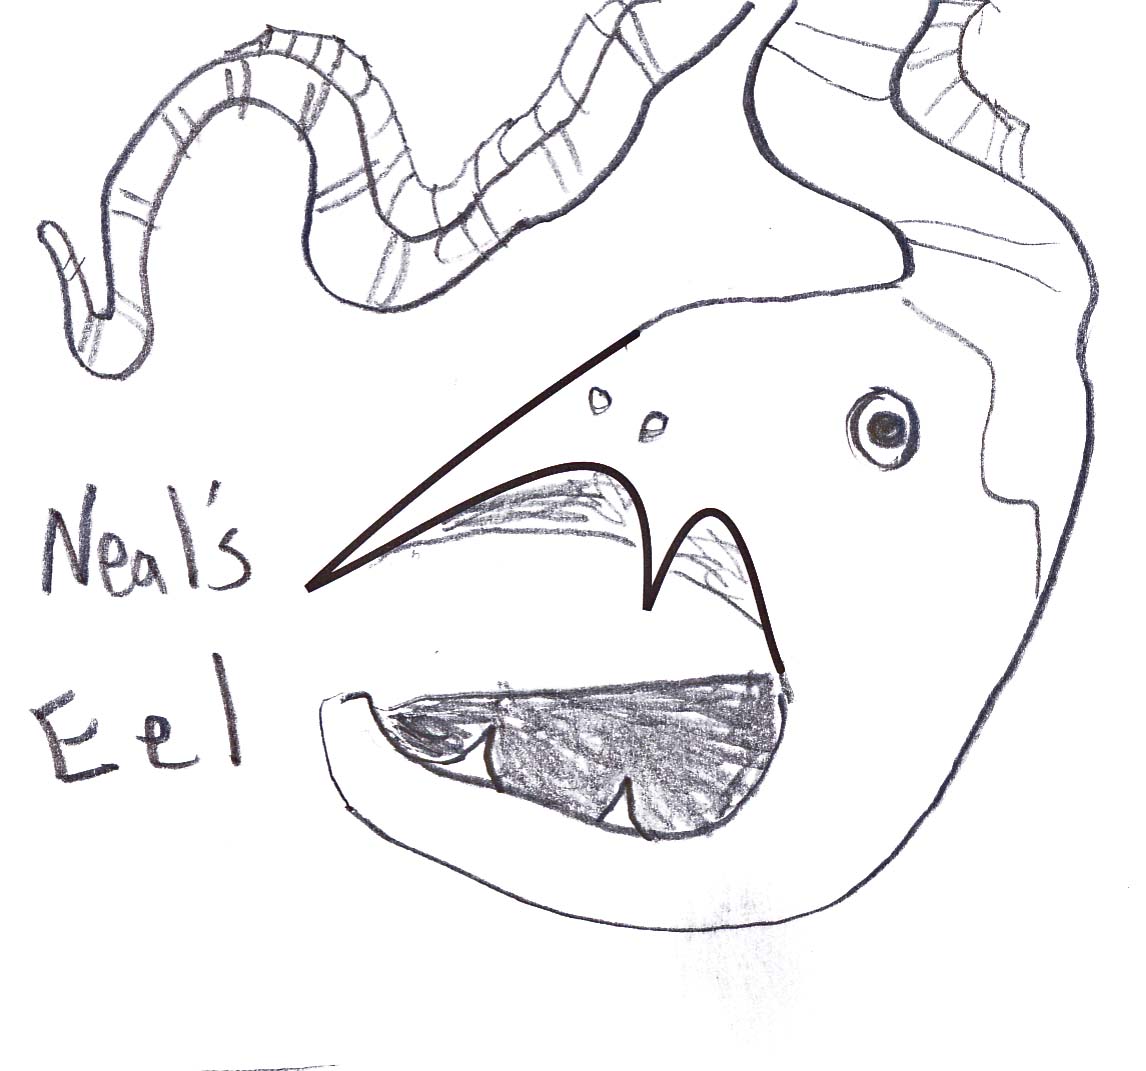 neal's eel